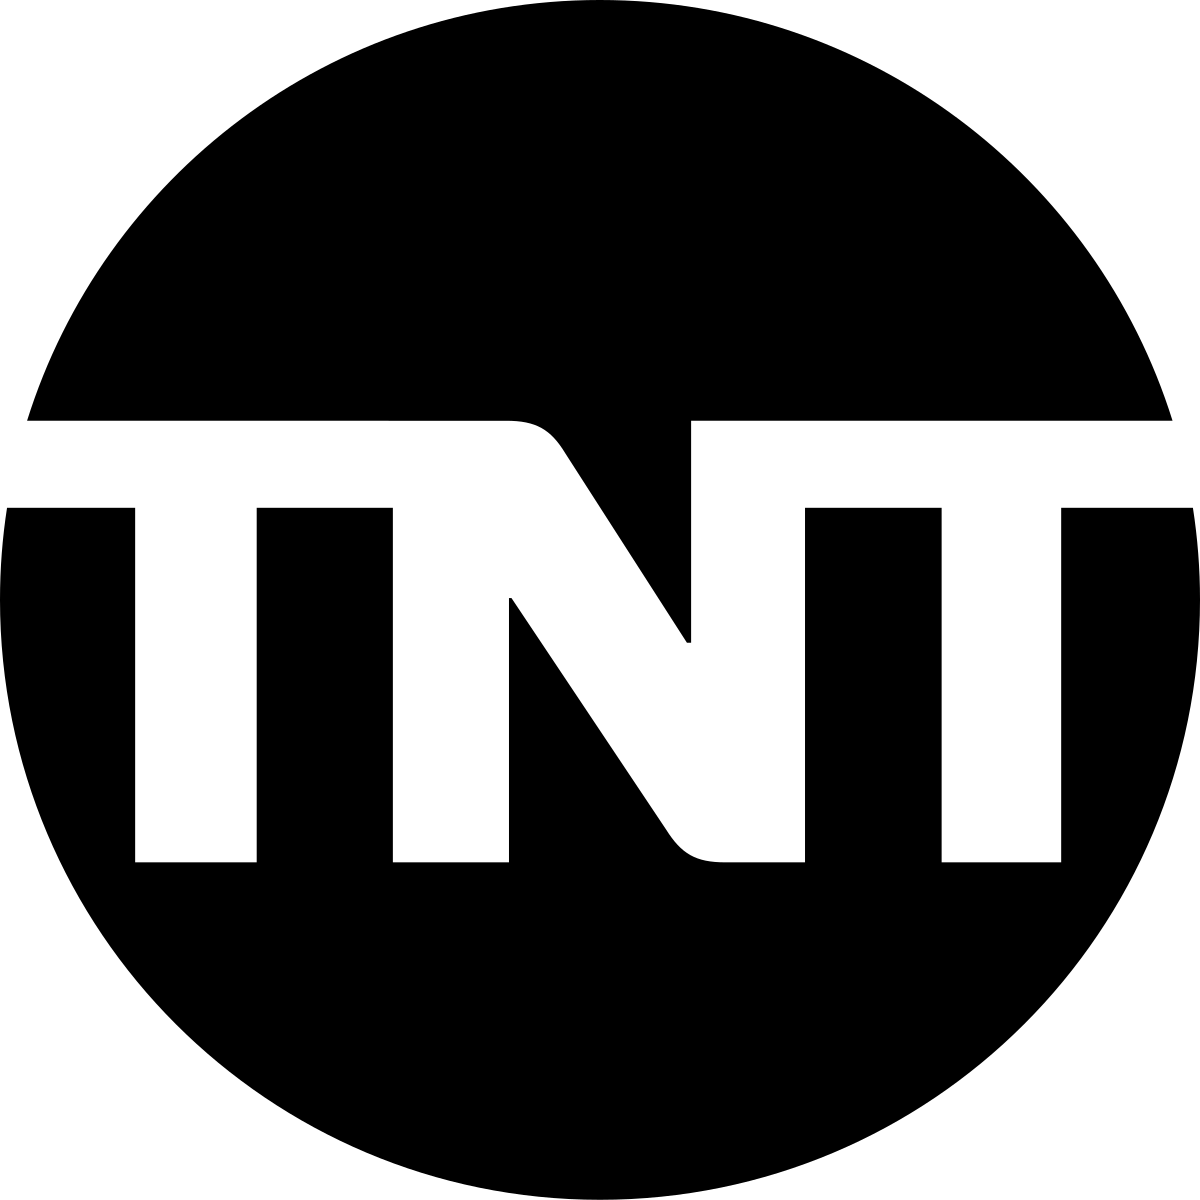 Small CBS Logo - TNT (U.S. TV network)